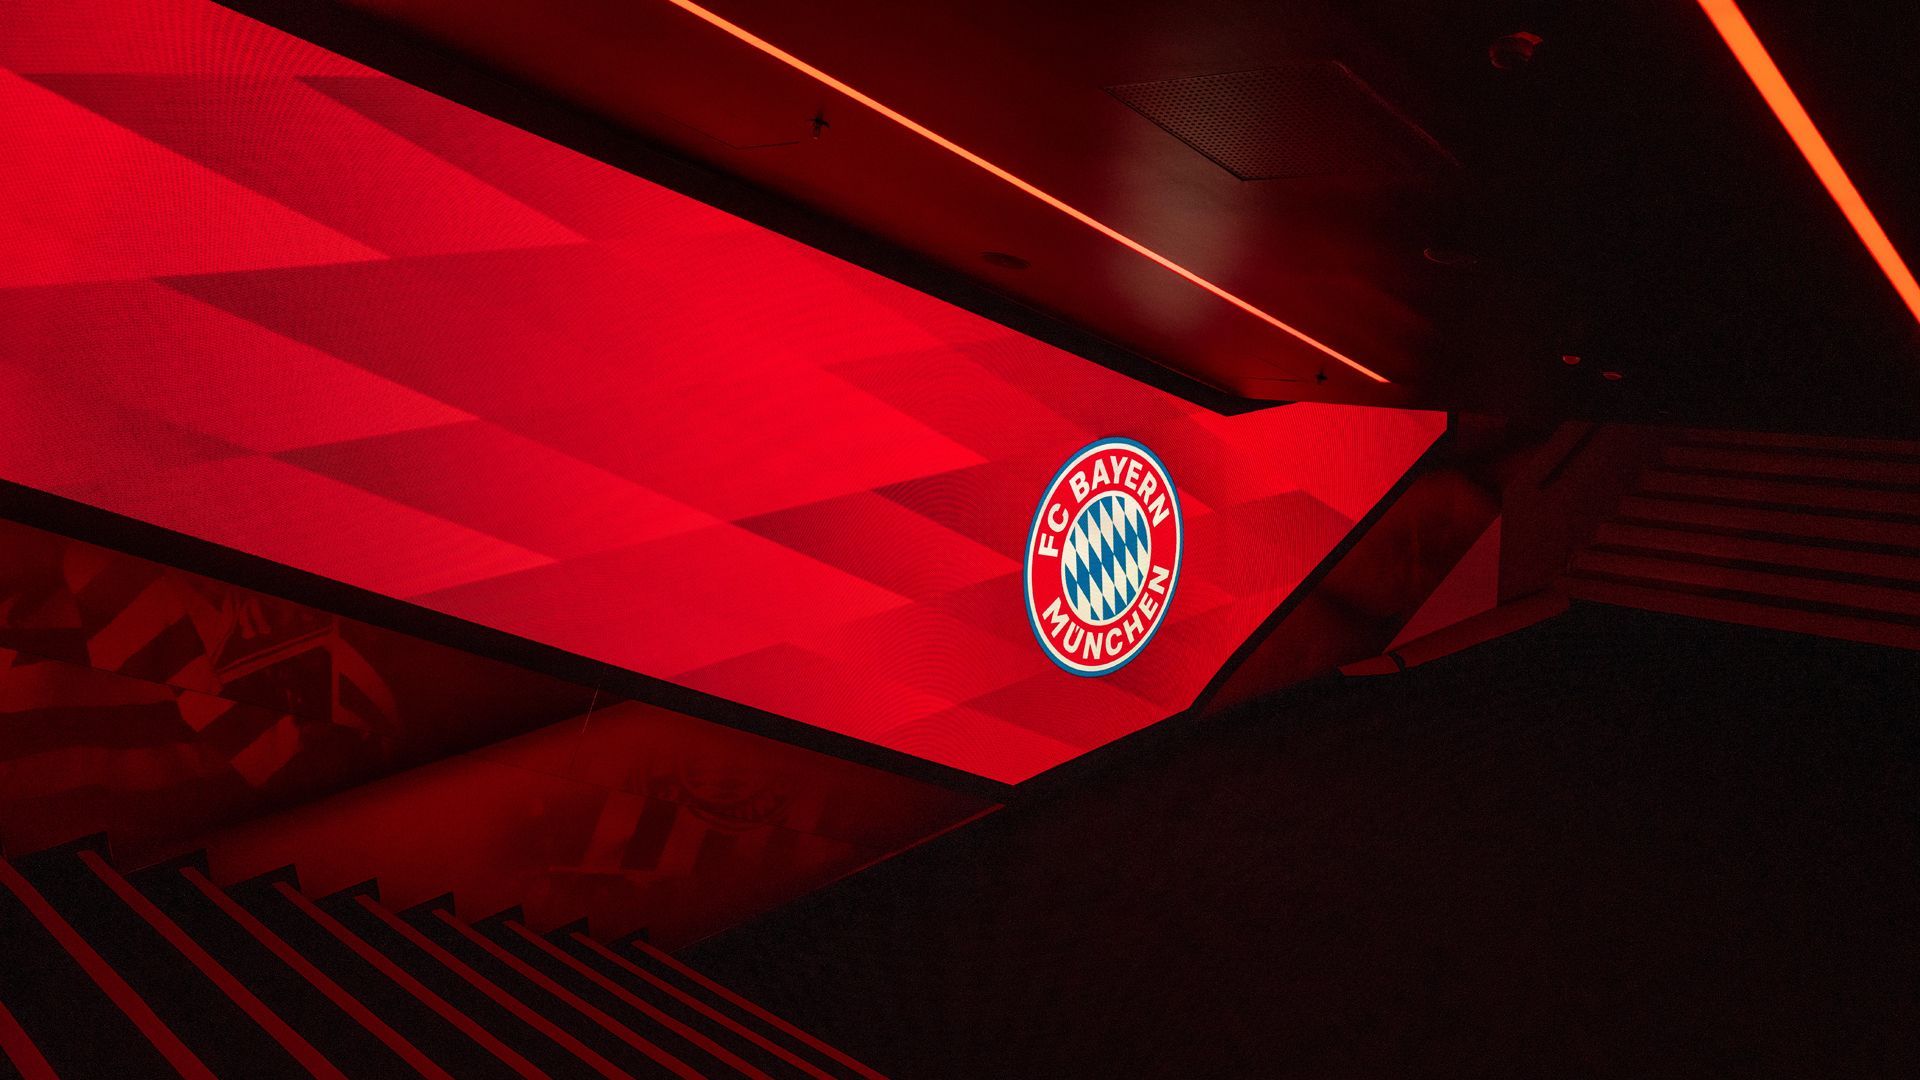 Geiles Hintergrundbild 1920x1080. Wallpaper: Allianz Arena Bildschirmhintergrund